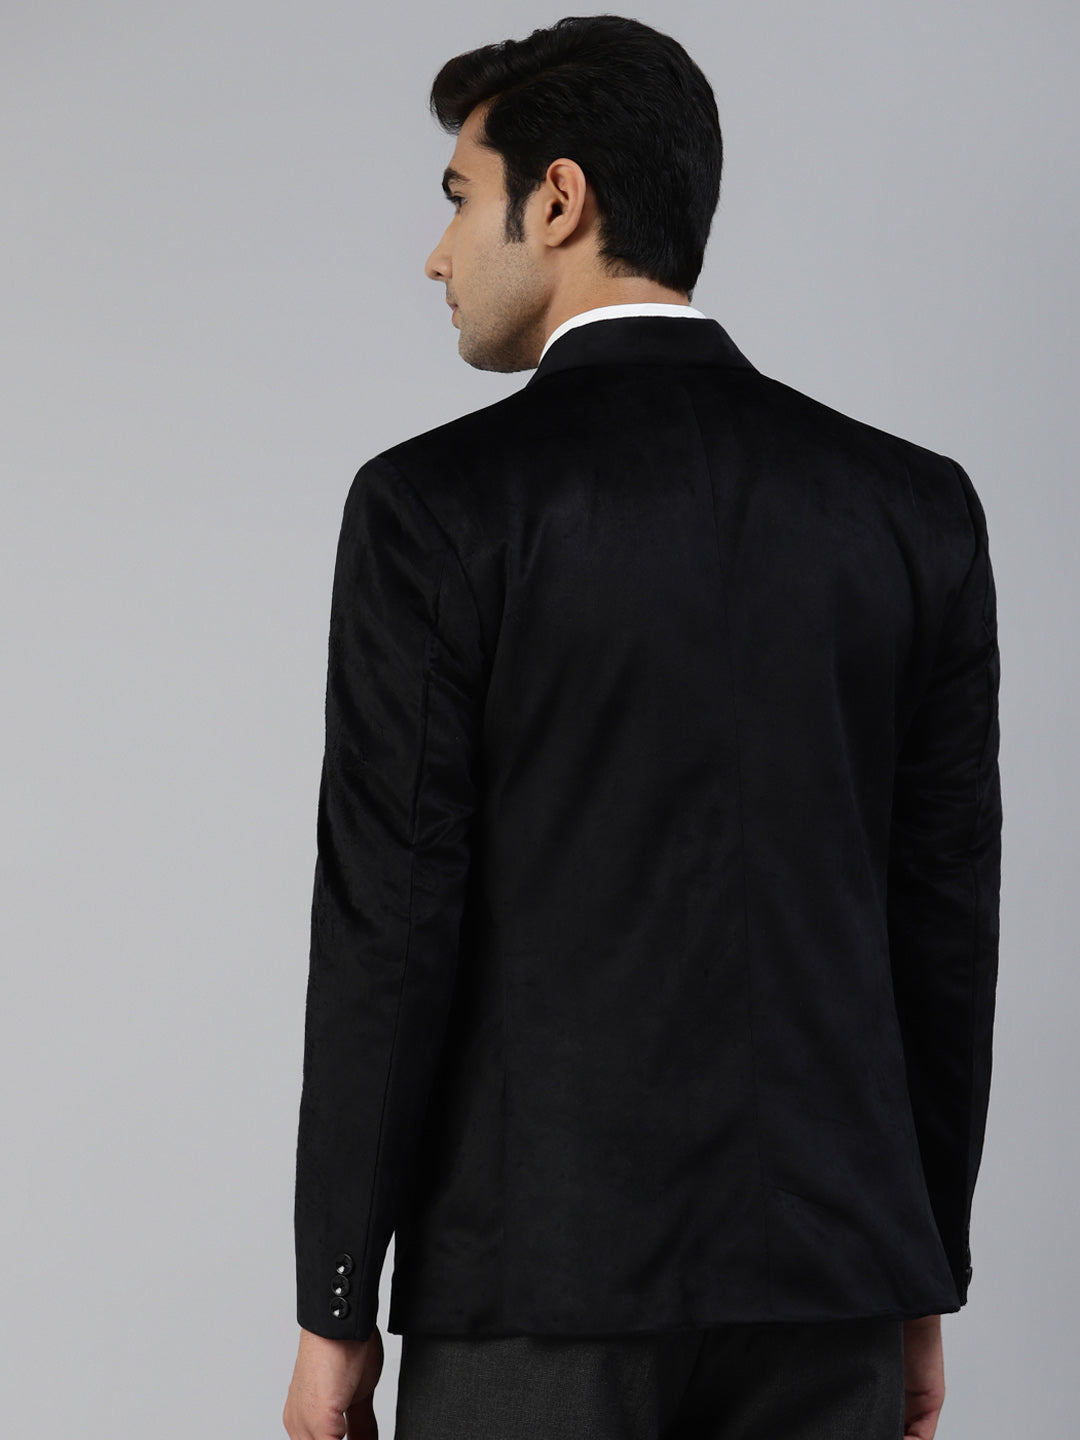 Luxrio Blazer Velvet Tuxedo for Men Black